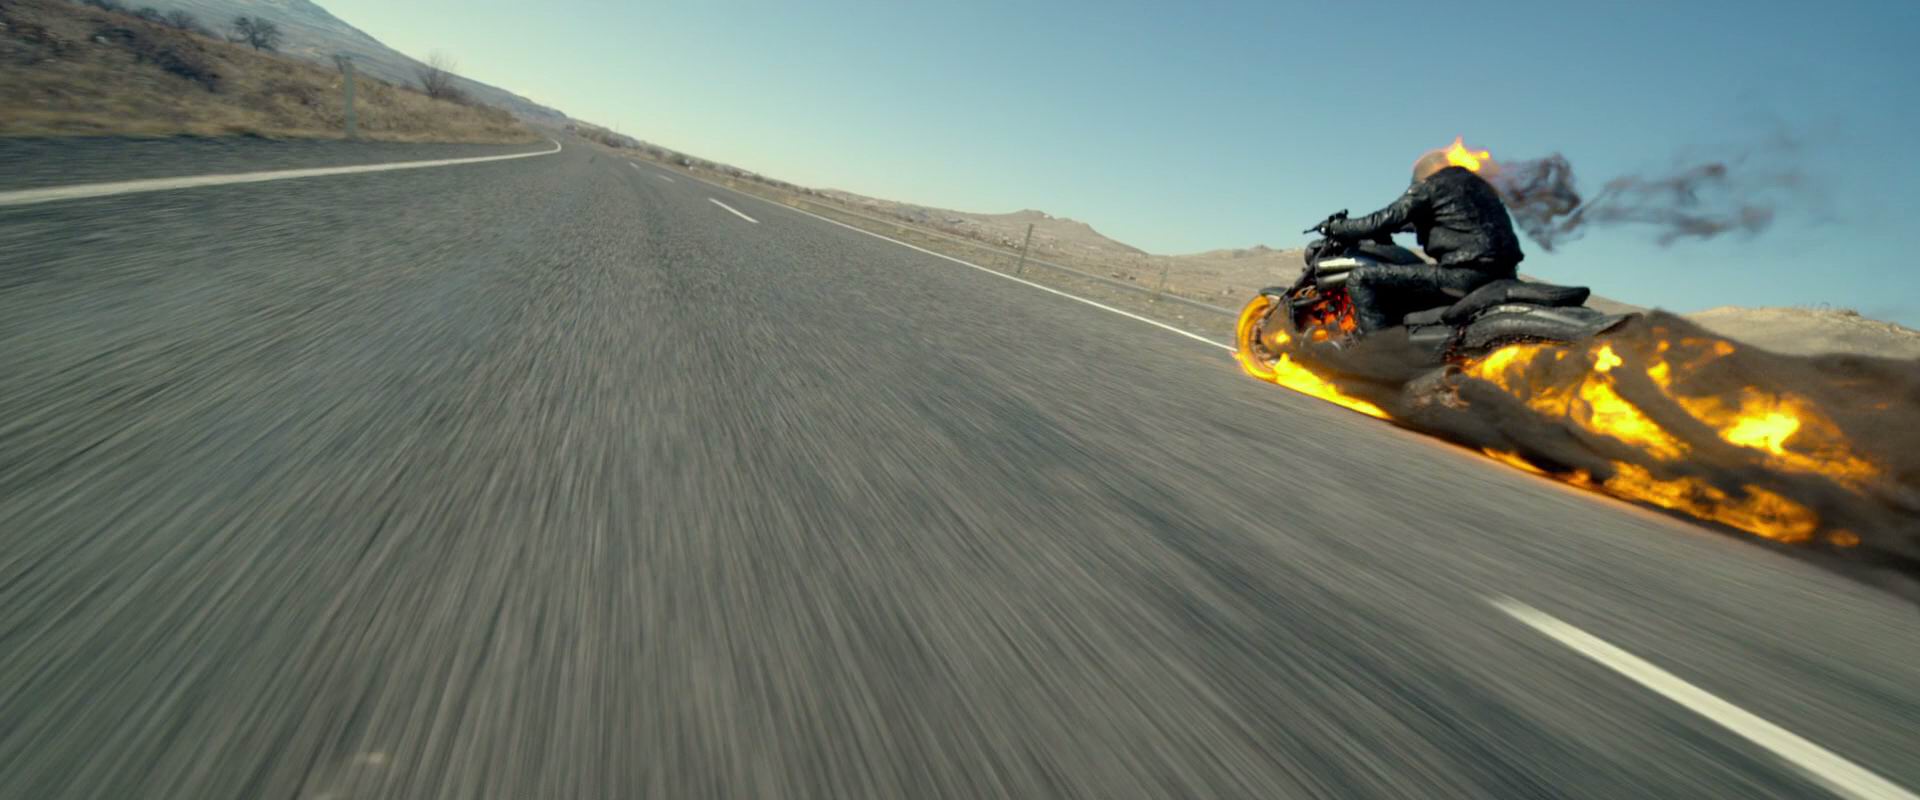 [灵魂战车][新索原盘 国英双语 简英字幕][Ghost Rider 2007 CHN Blu-ray 1080P AVC LPCM 5.1-doraemon][37.97GB] - 2D电影 ...